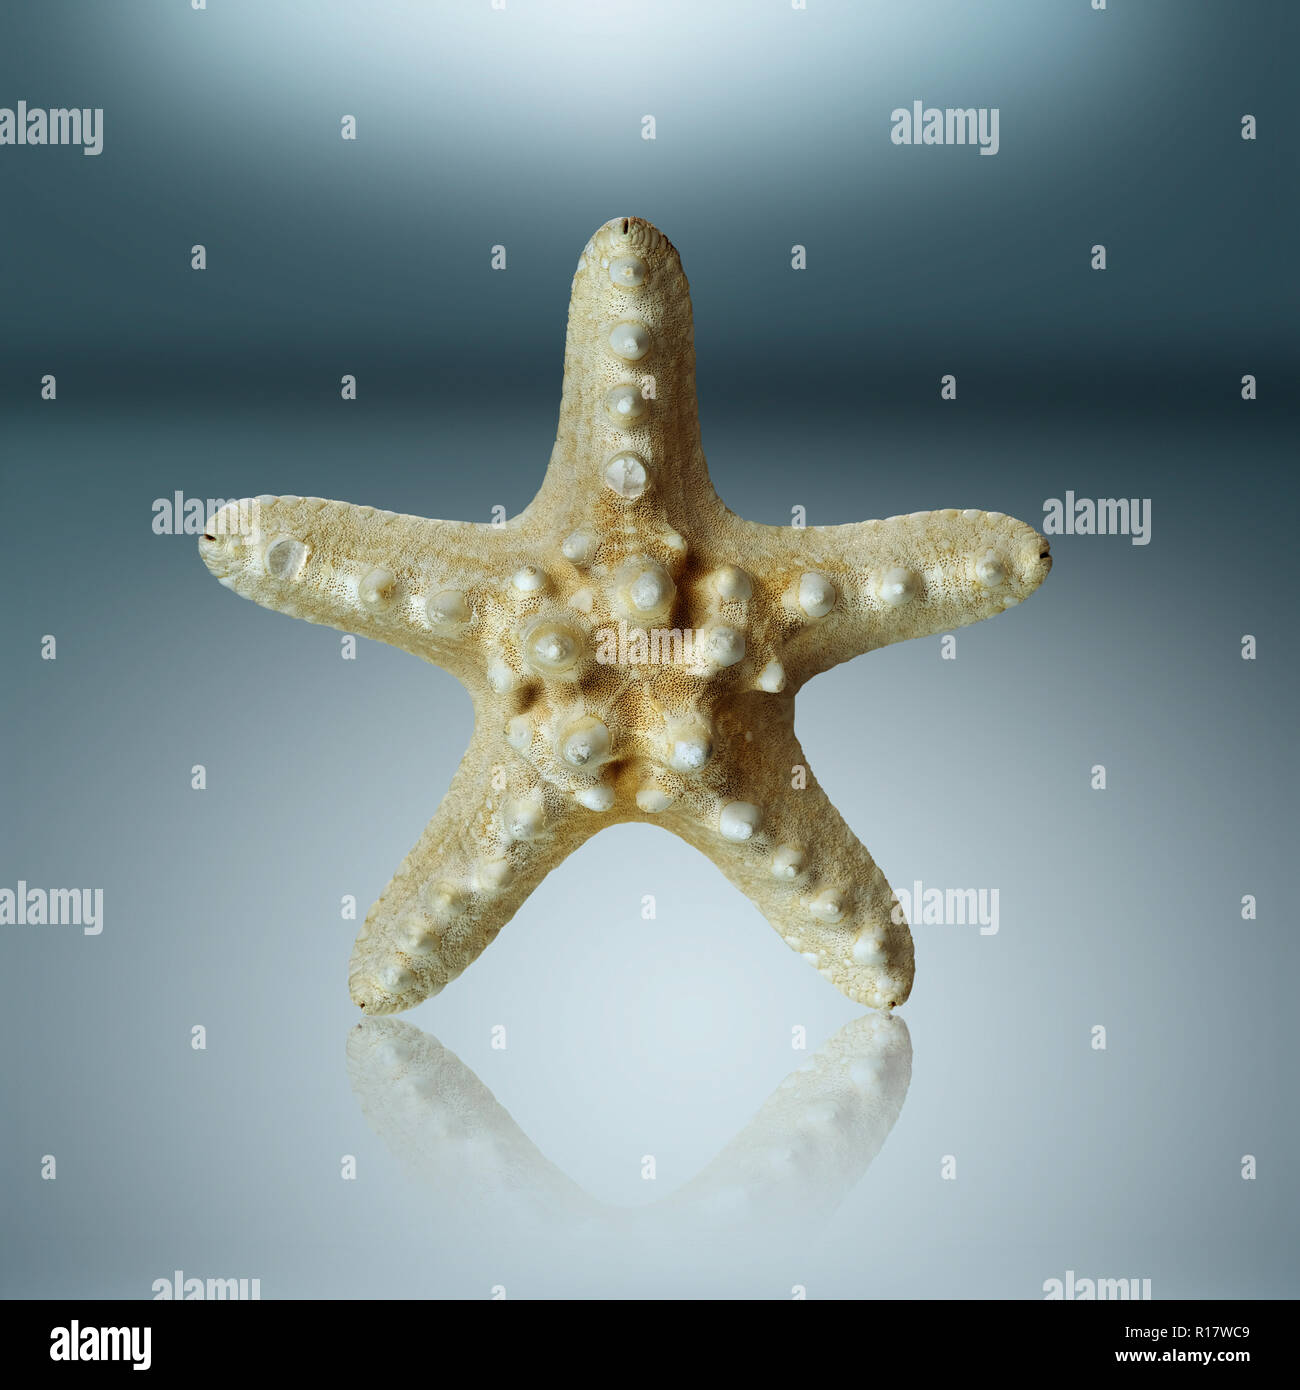 La vie encore de conserves de poisson star debout sur une surface réfléchissante Banque D'Images